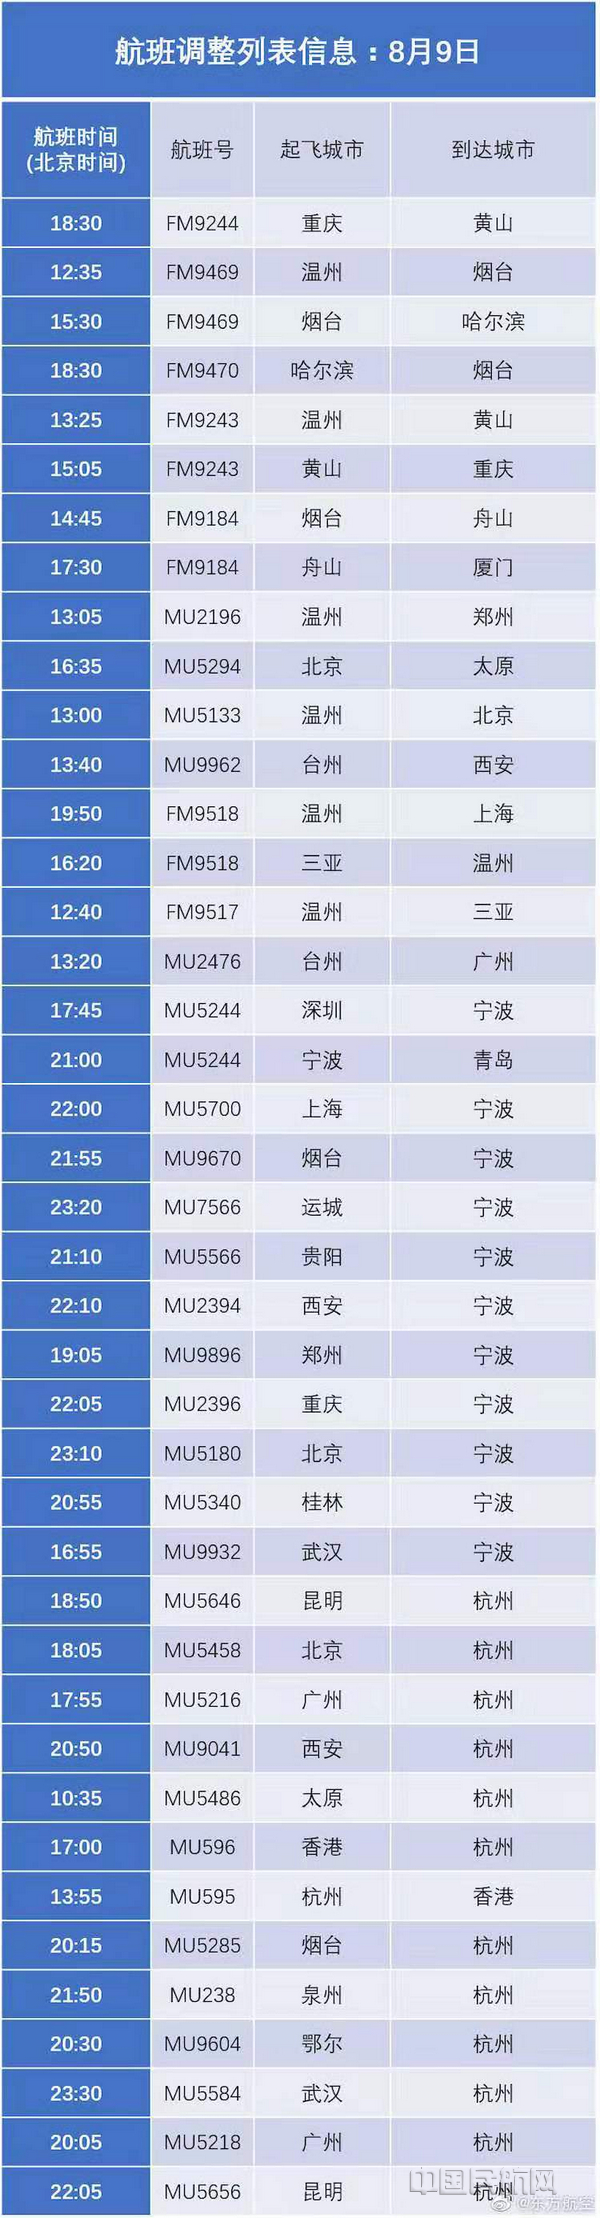 受台风利奇马影响东航再取消234班航班